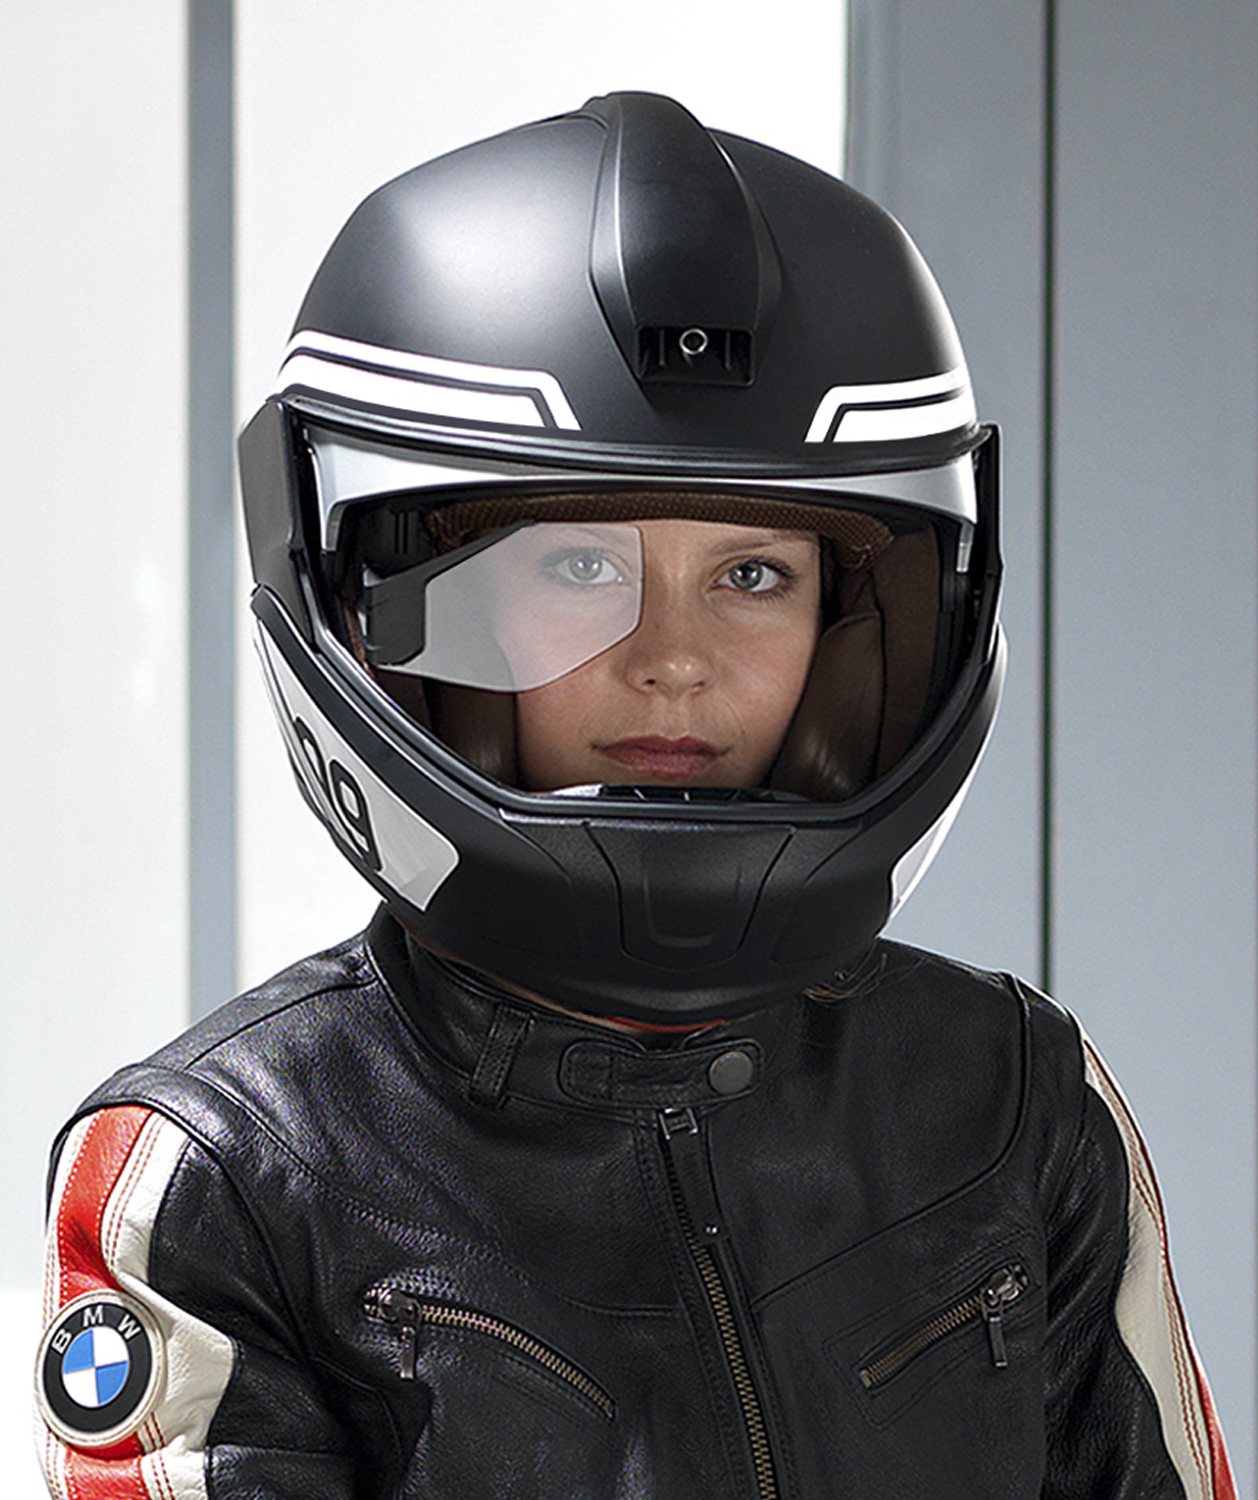 BMW head up display for motorbike helmet